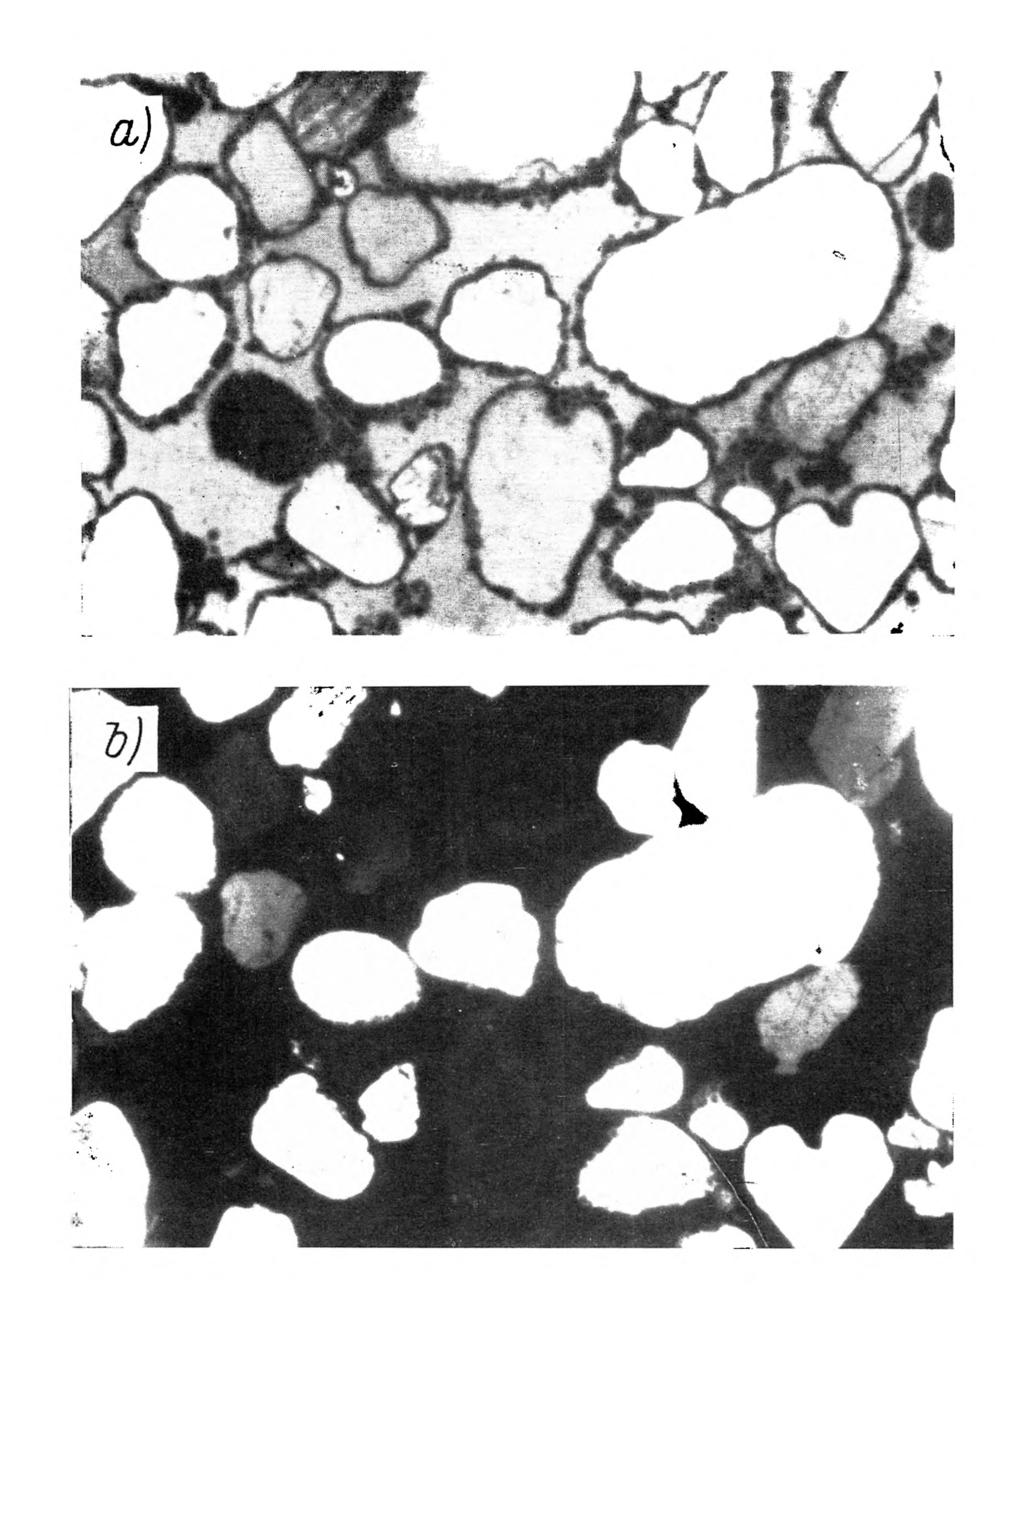 Rys. 4. M ikrom orfologia gleby bielicow ej w ytworzonej z piasku luźnego. Poziom B/,, głębokość próbki 40-62 cm.